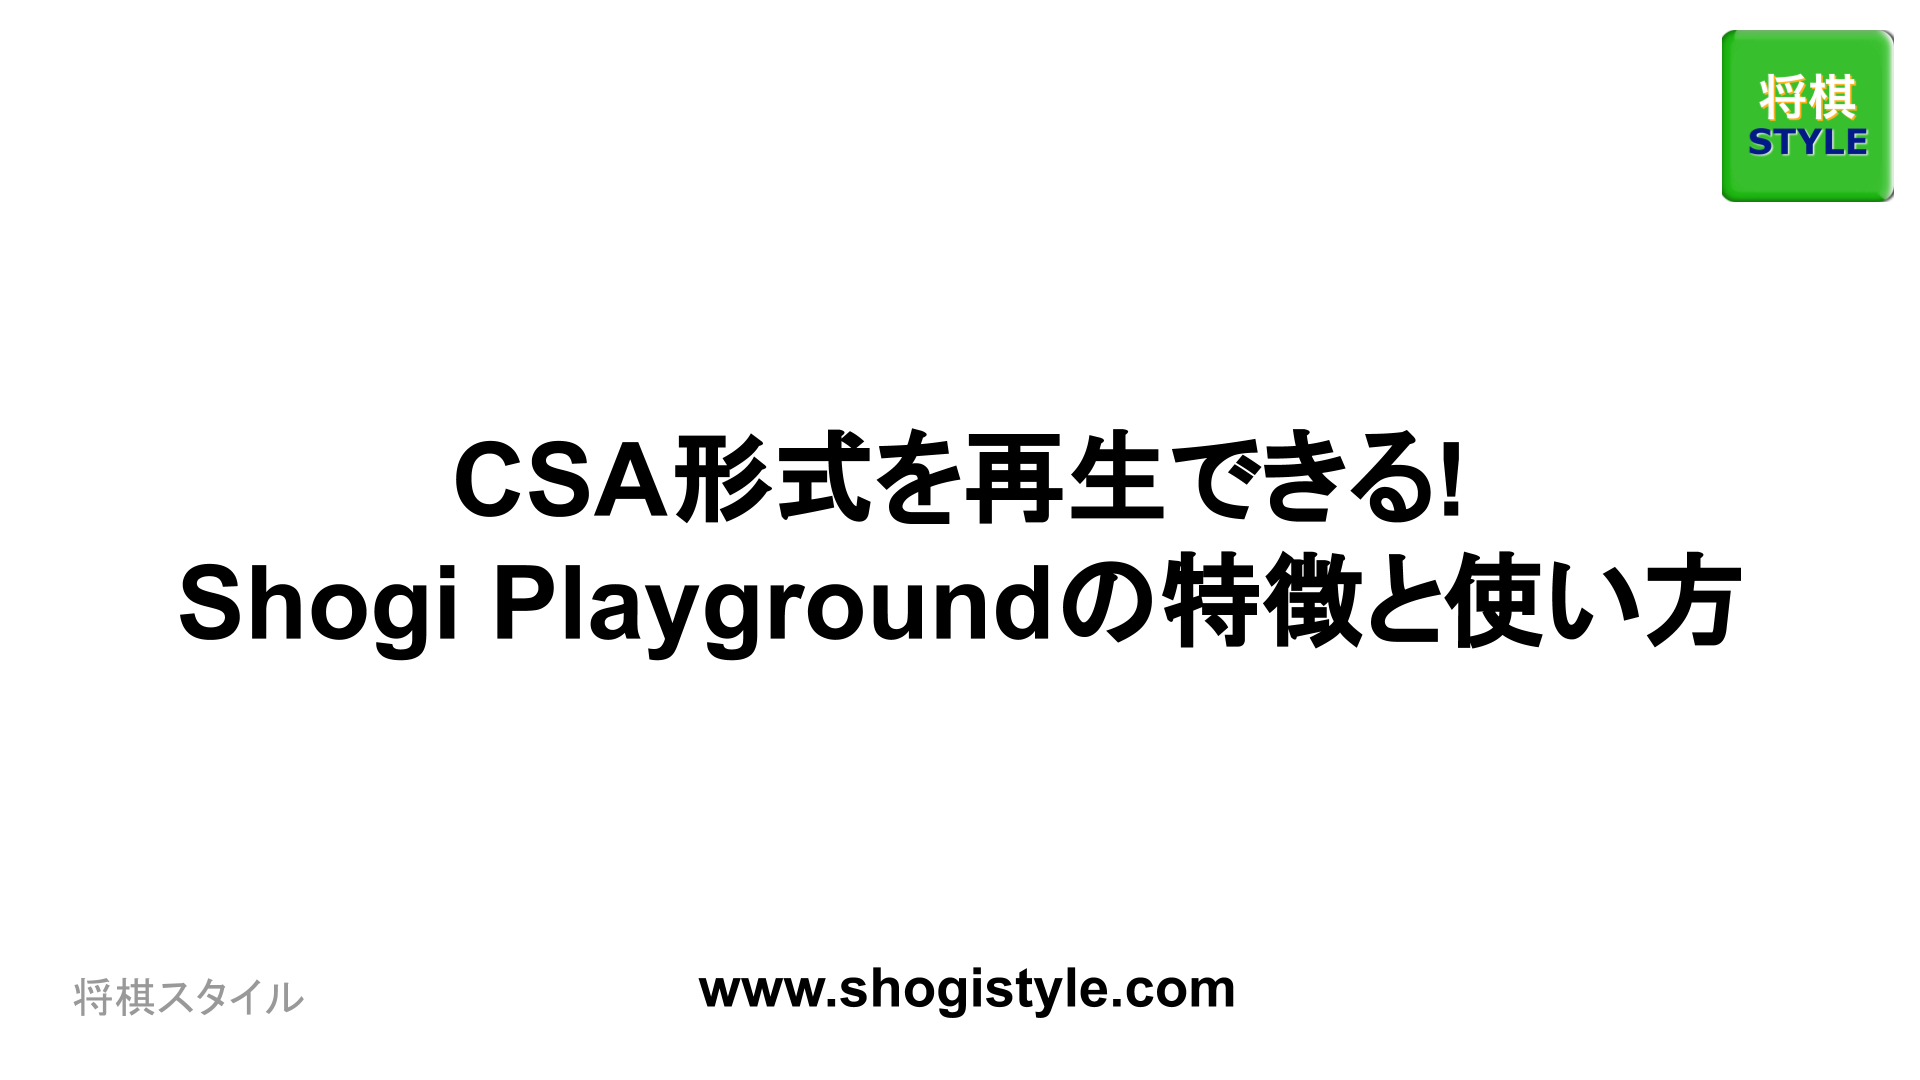 Shogi Playground